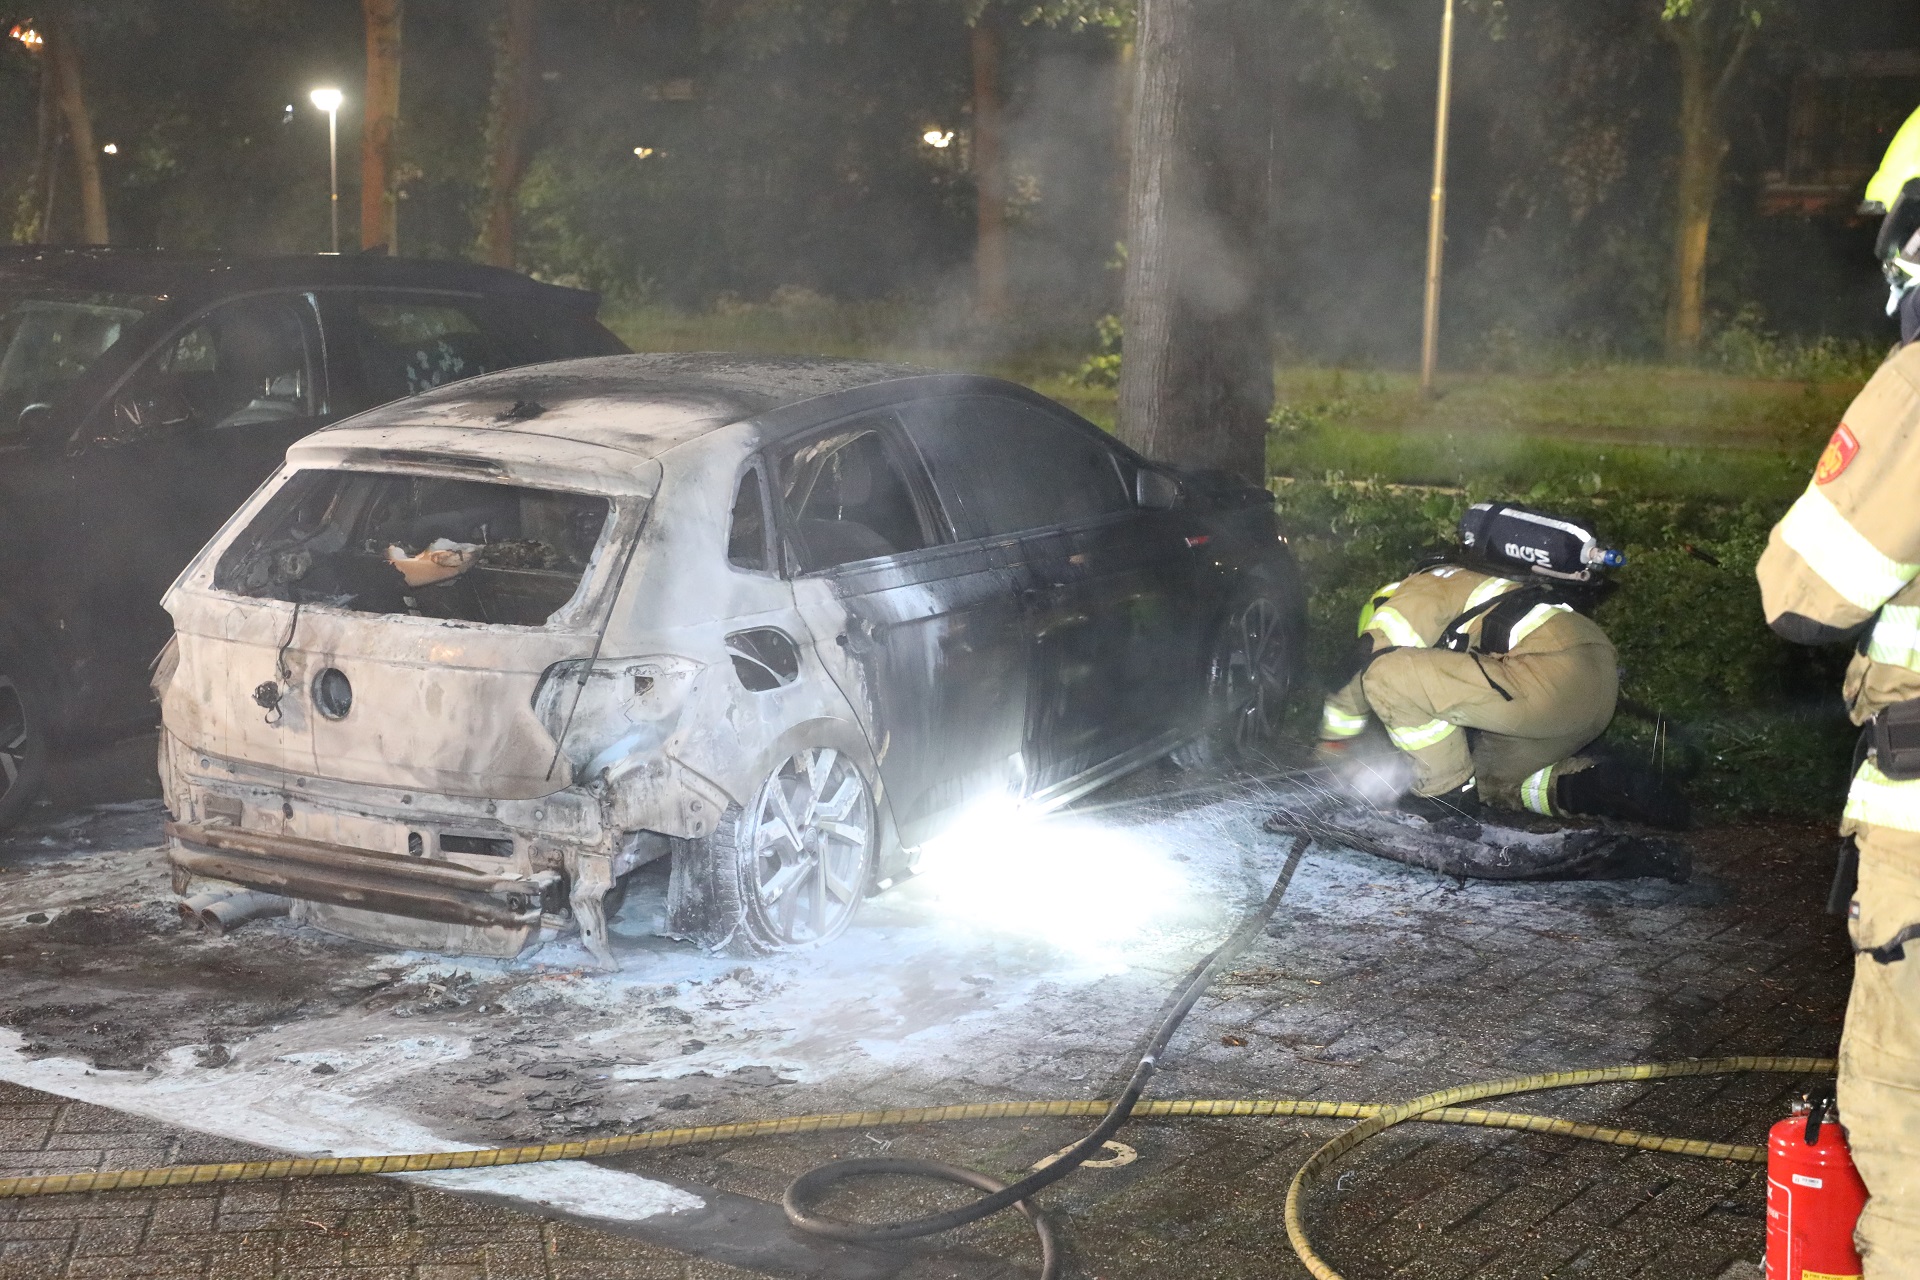 Geparkeerde auto door brand verwoest, politie onderzoekt brandstichting